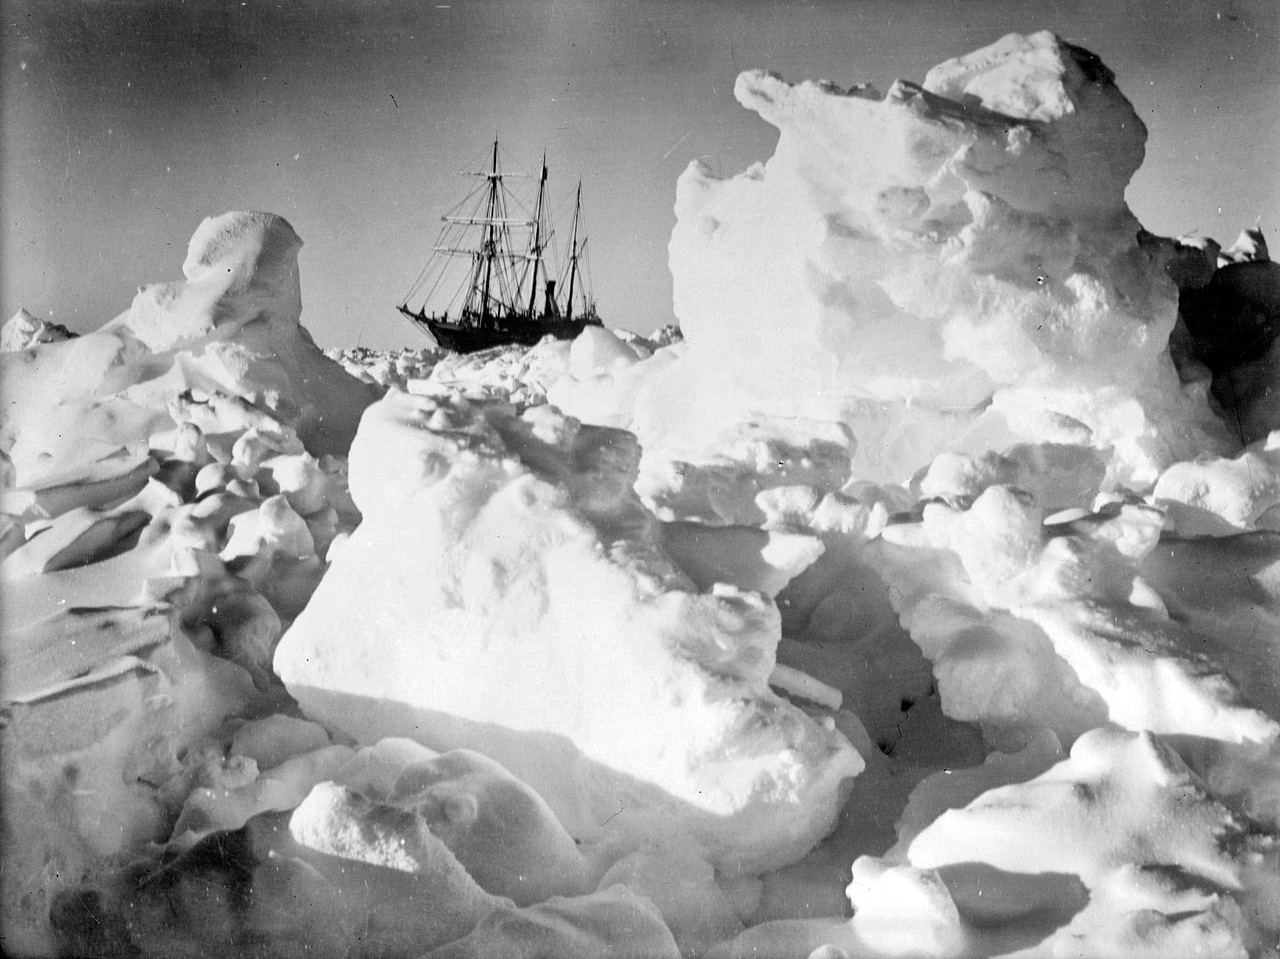 Endurance intrappolata tra i ghiacci - Viaggio in Antartide fai da te (quello di Shackleton)